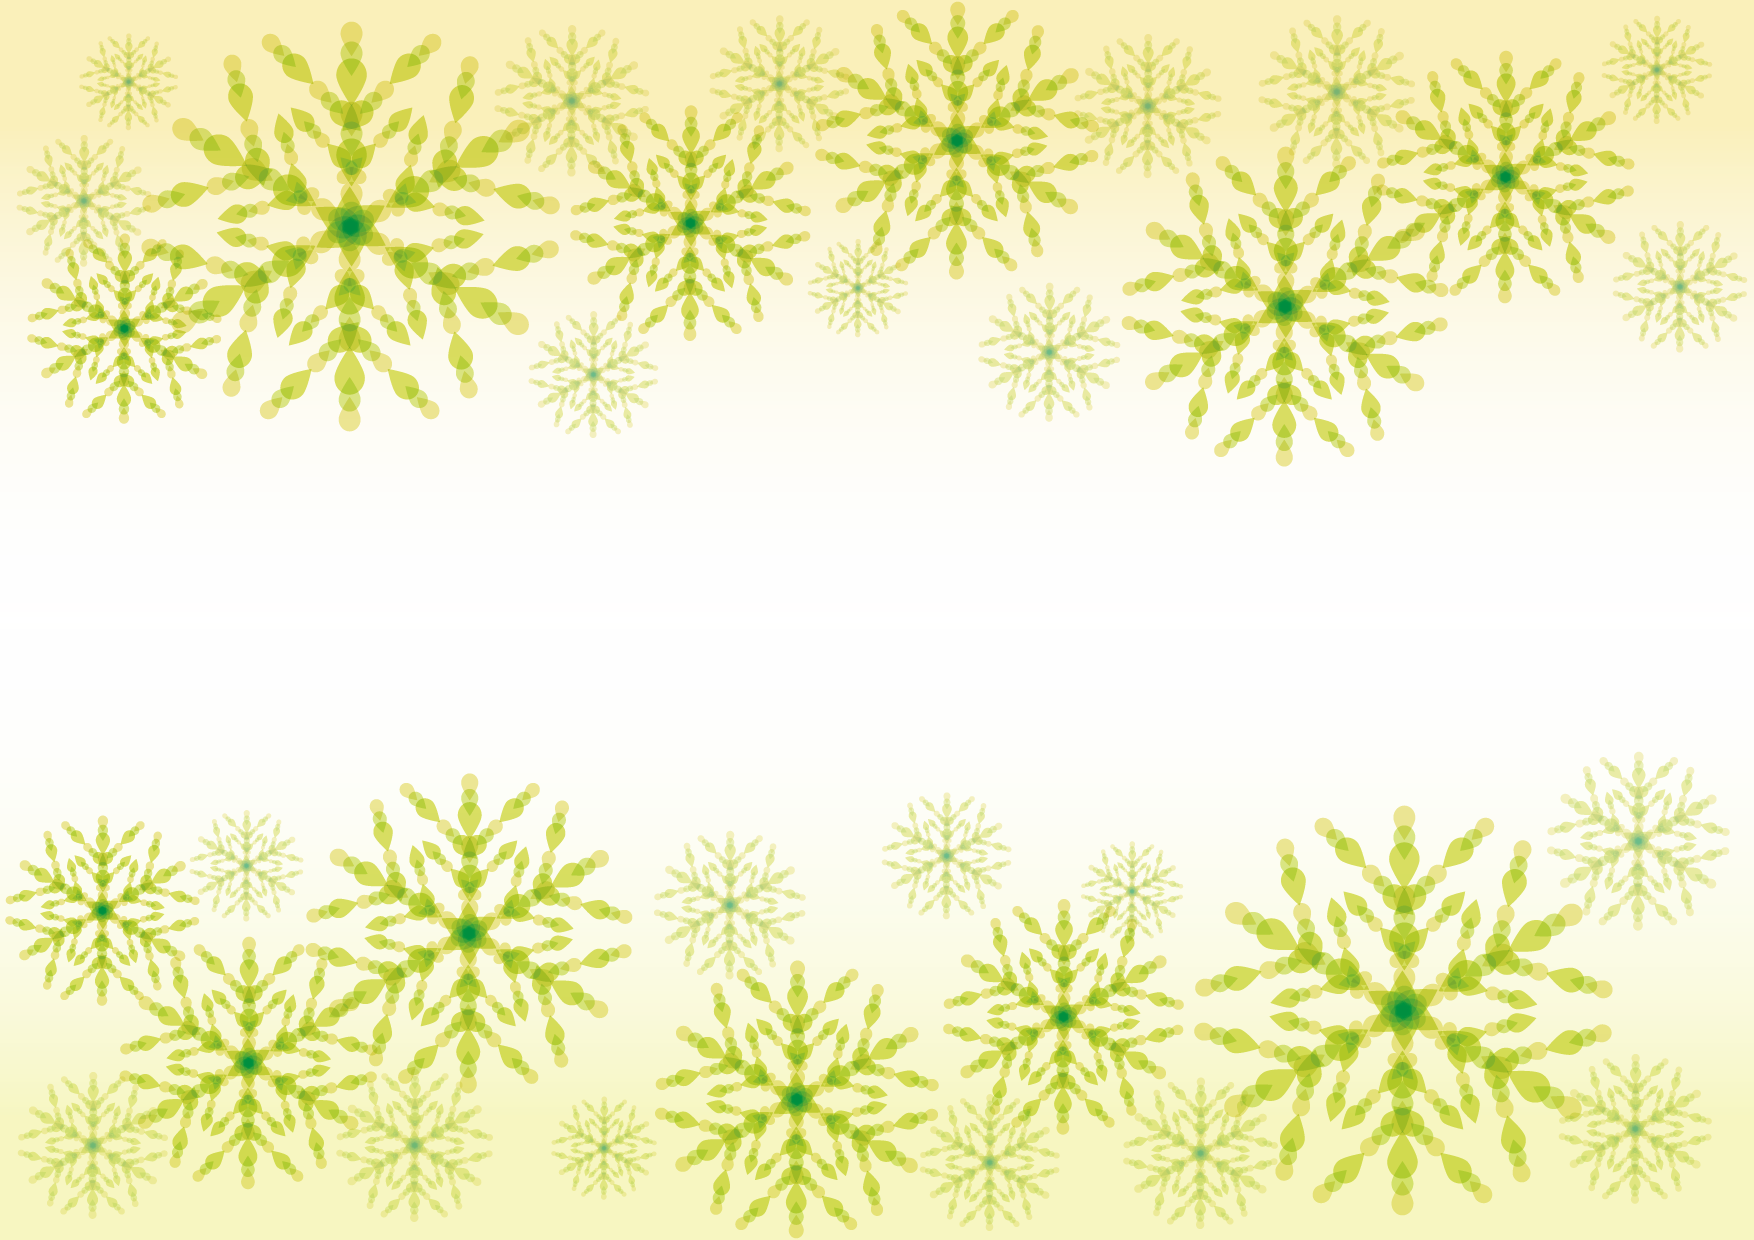 可愛いイラスト無料 雪の結晶 黄色 背景 Free Illustration Snowflakes Yellow Background 公式 イラスト素材サイト イラストダウンロード